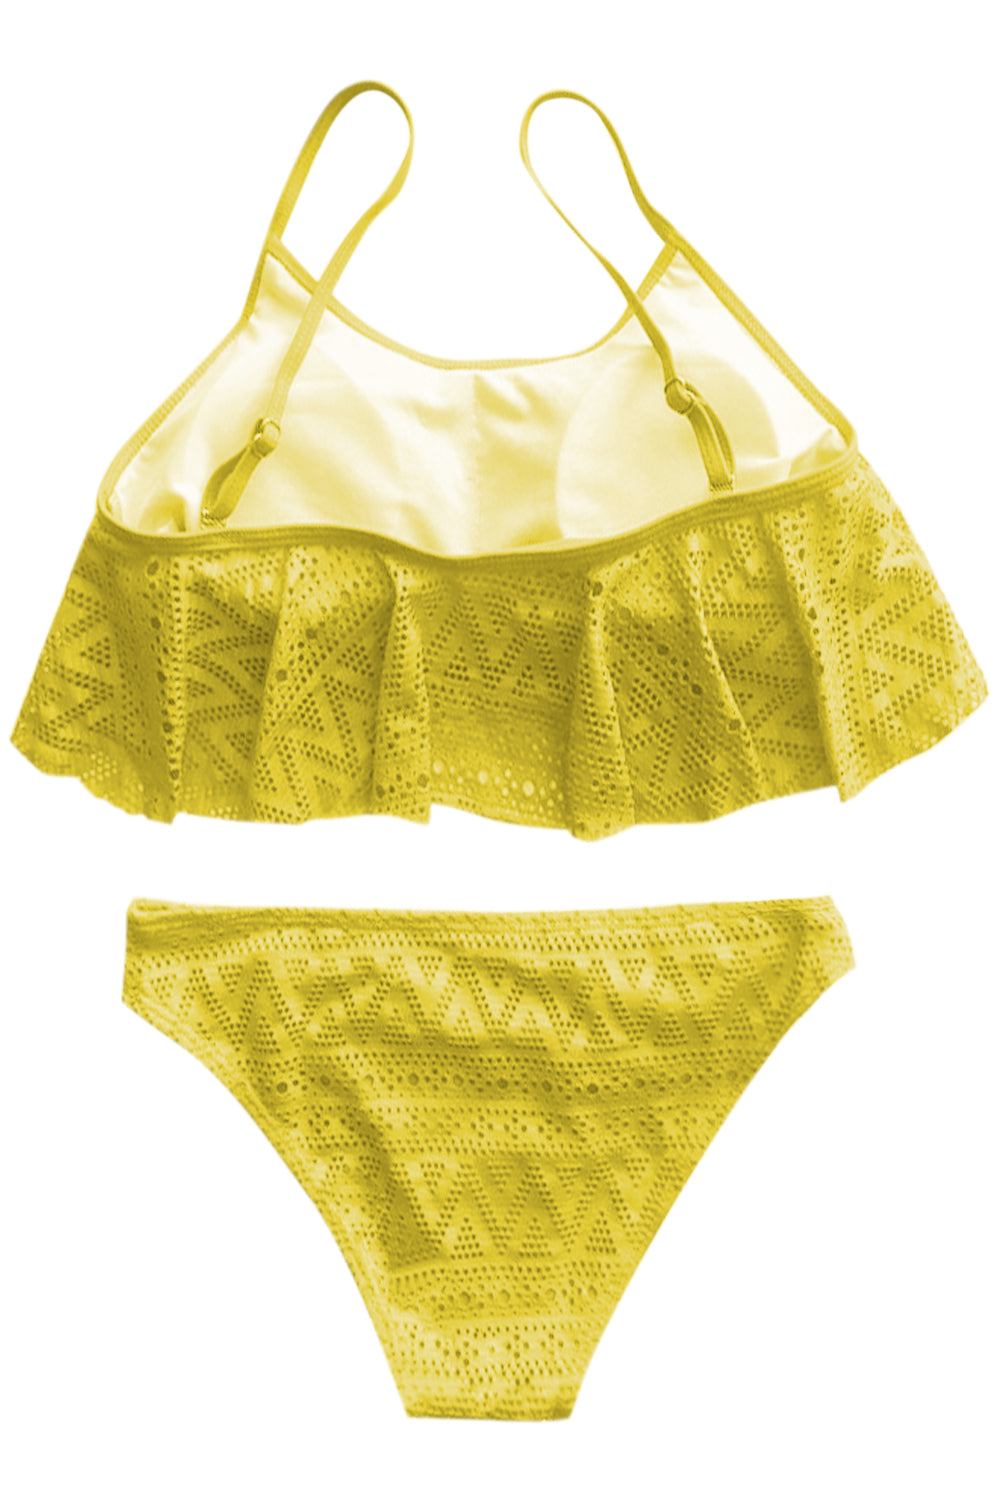 Iyasson Crochet Lace Falbala Bikini Set